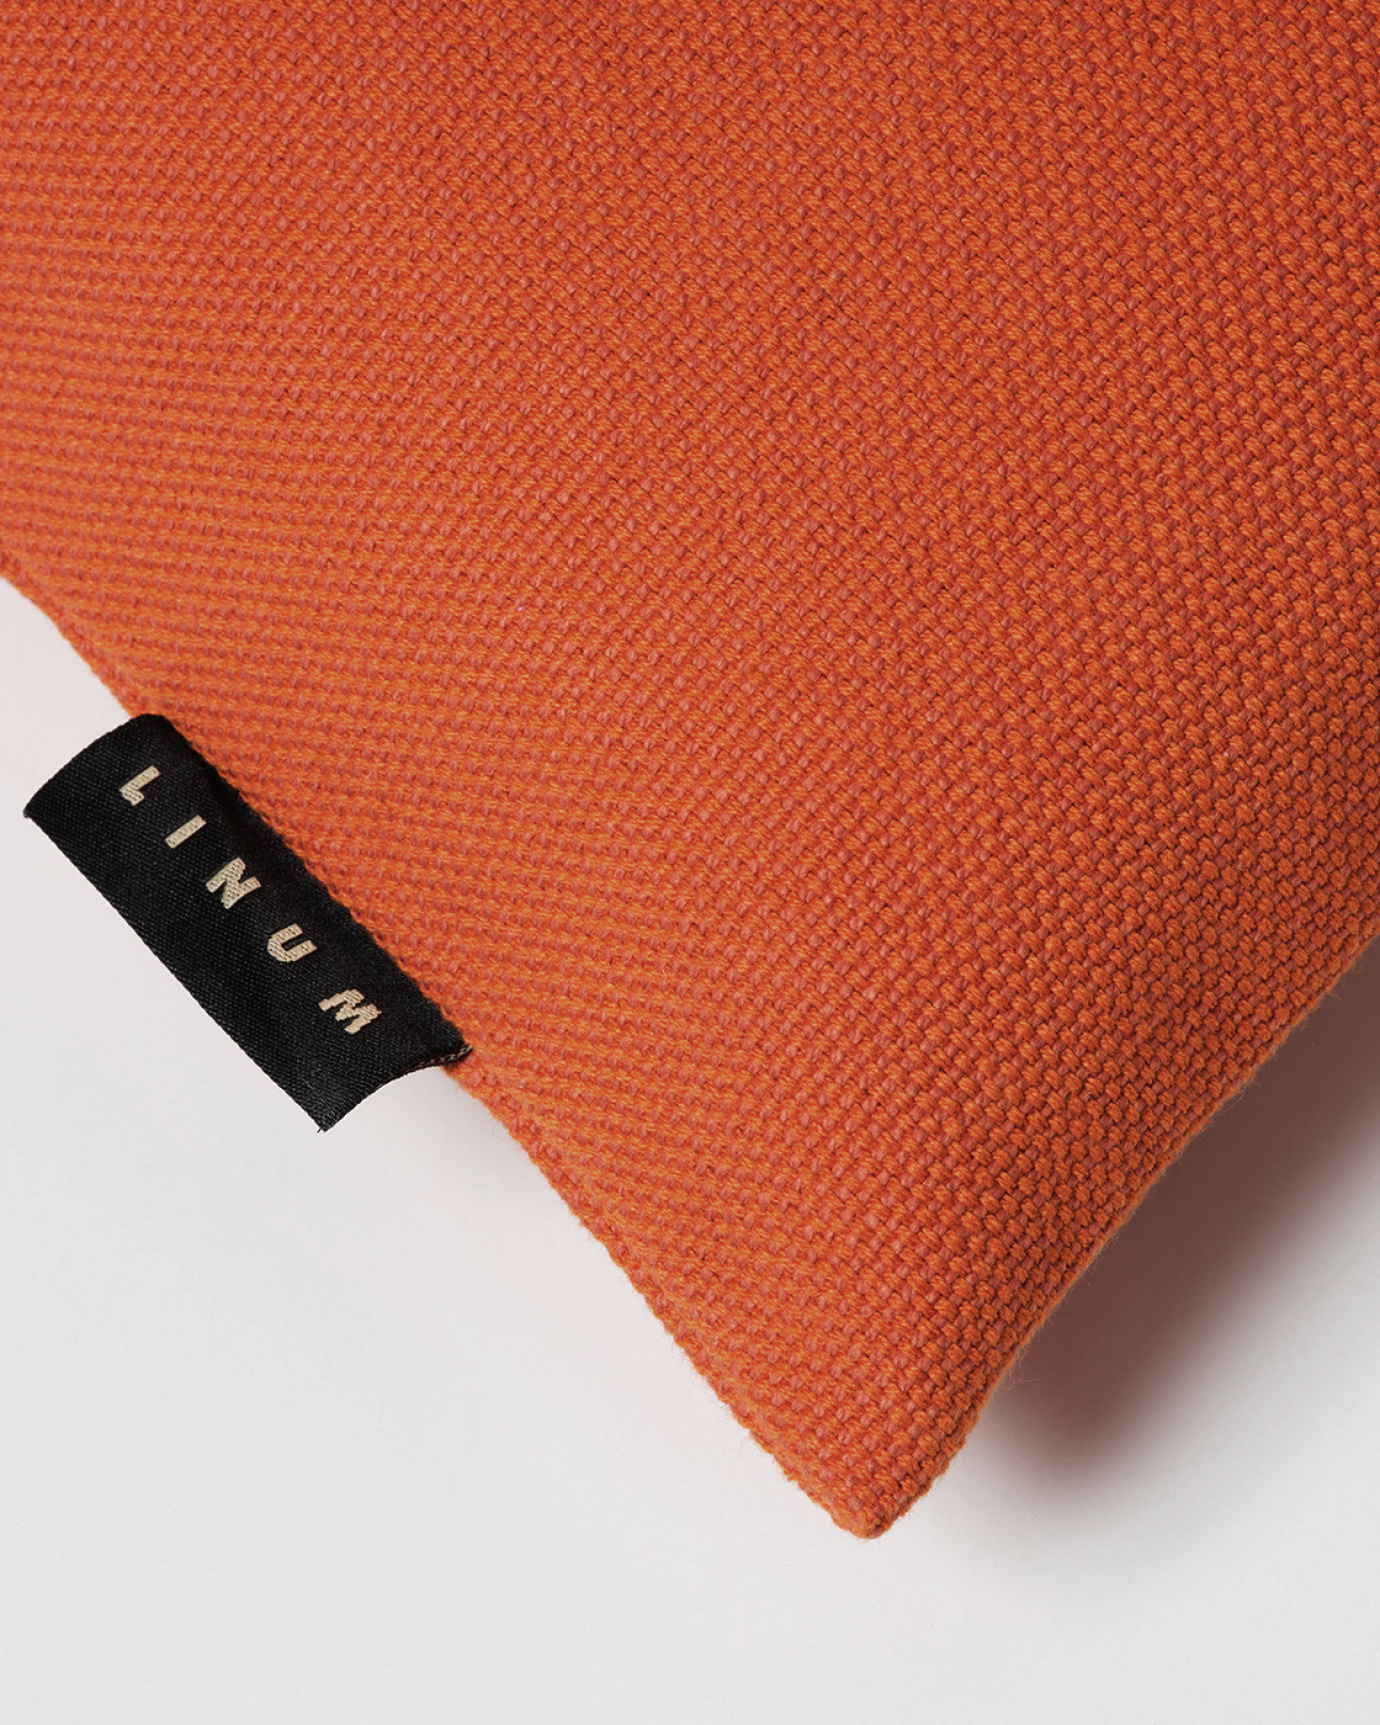 PEPPER Cushion cover 60x60 cm Rusty orange, bild 2 